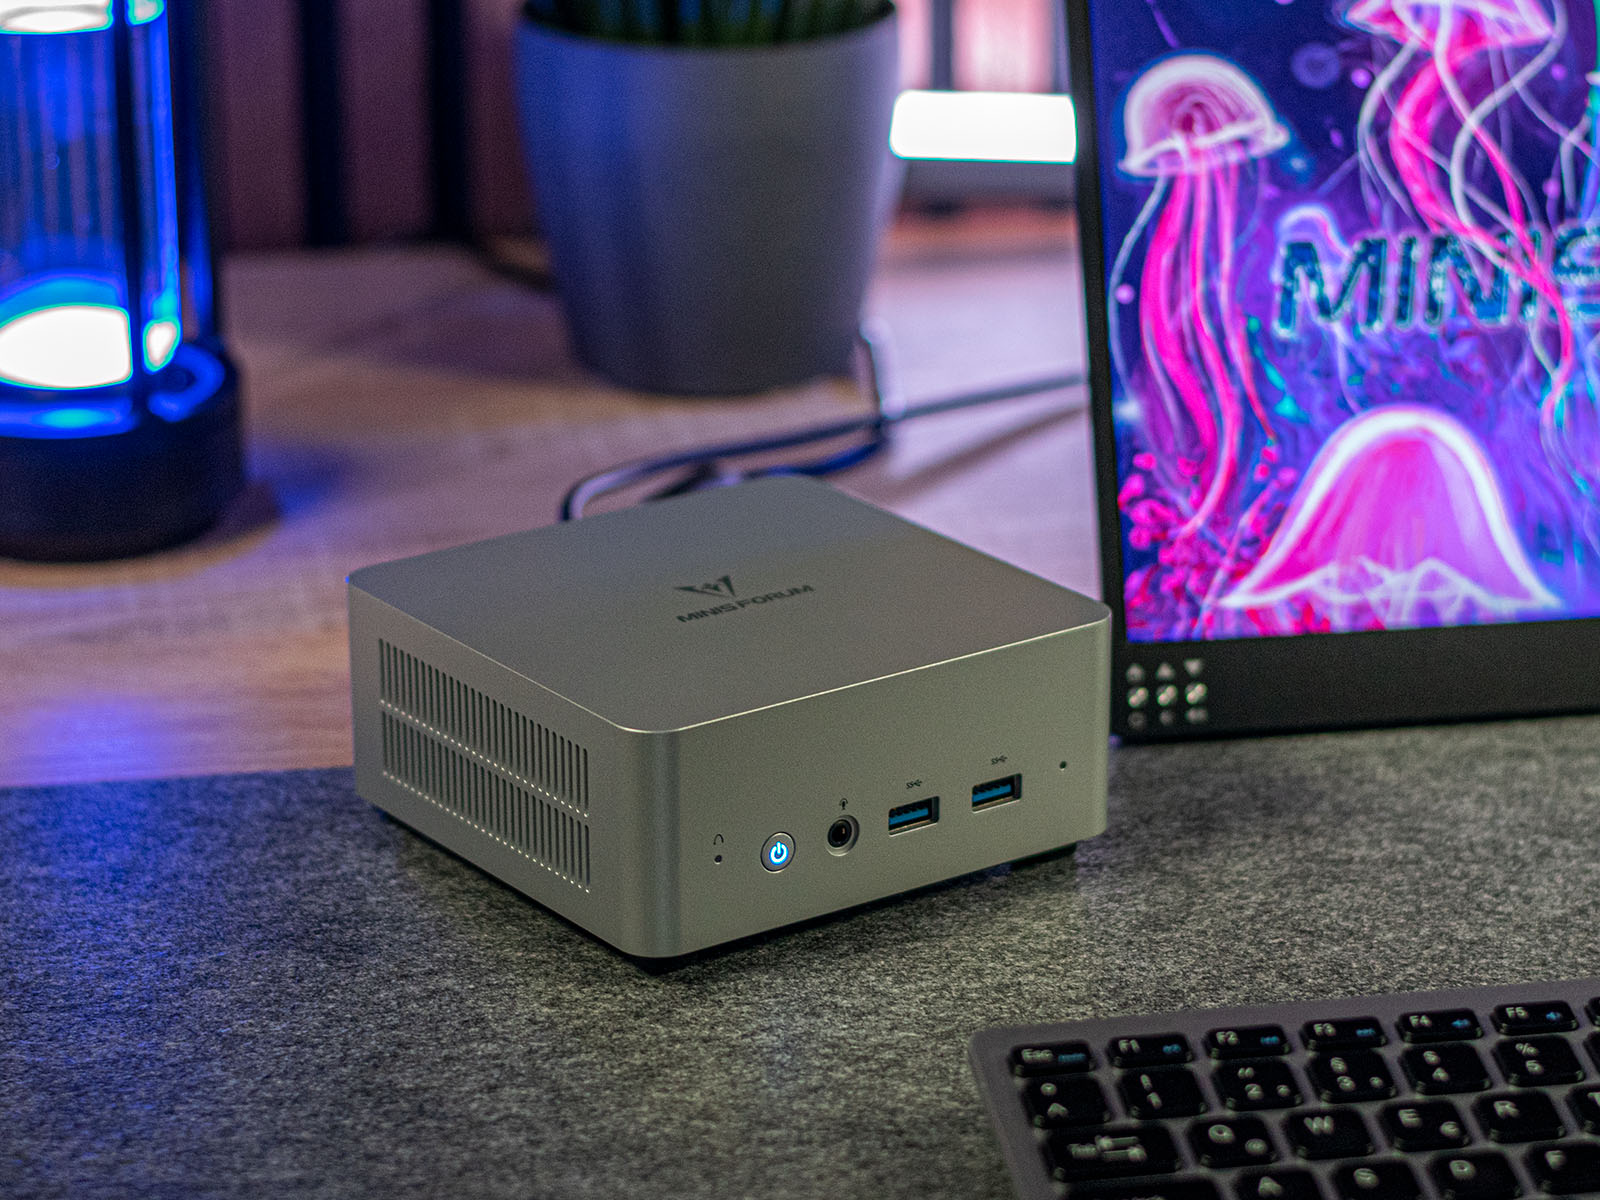 Minisforum Venus Series UN1245 review: A powerful mini PC with an 